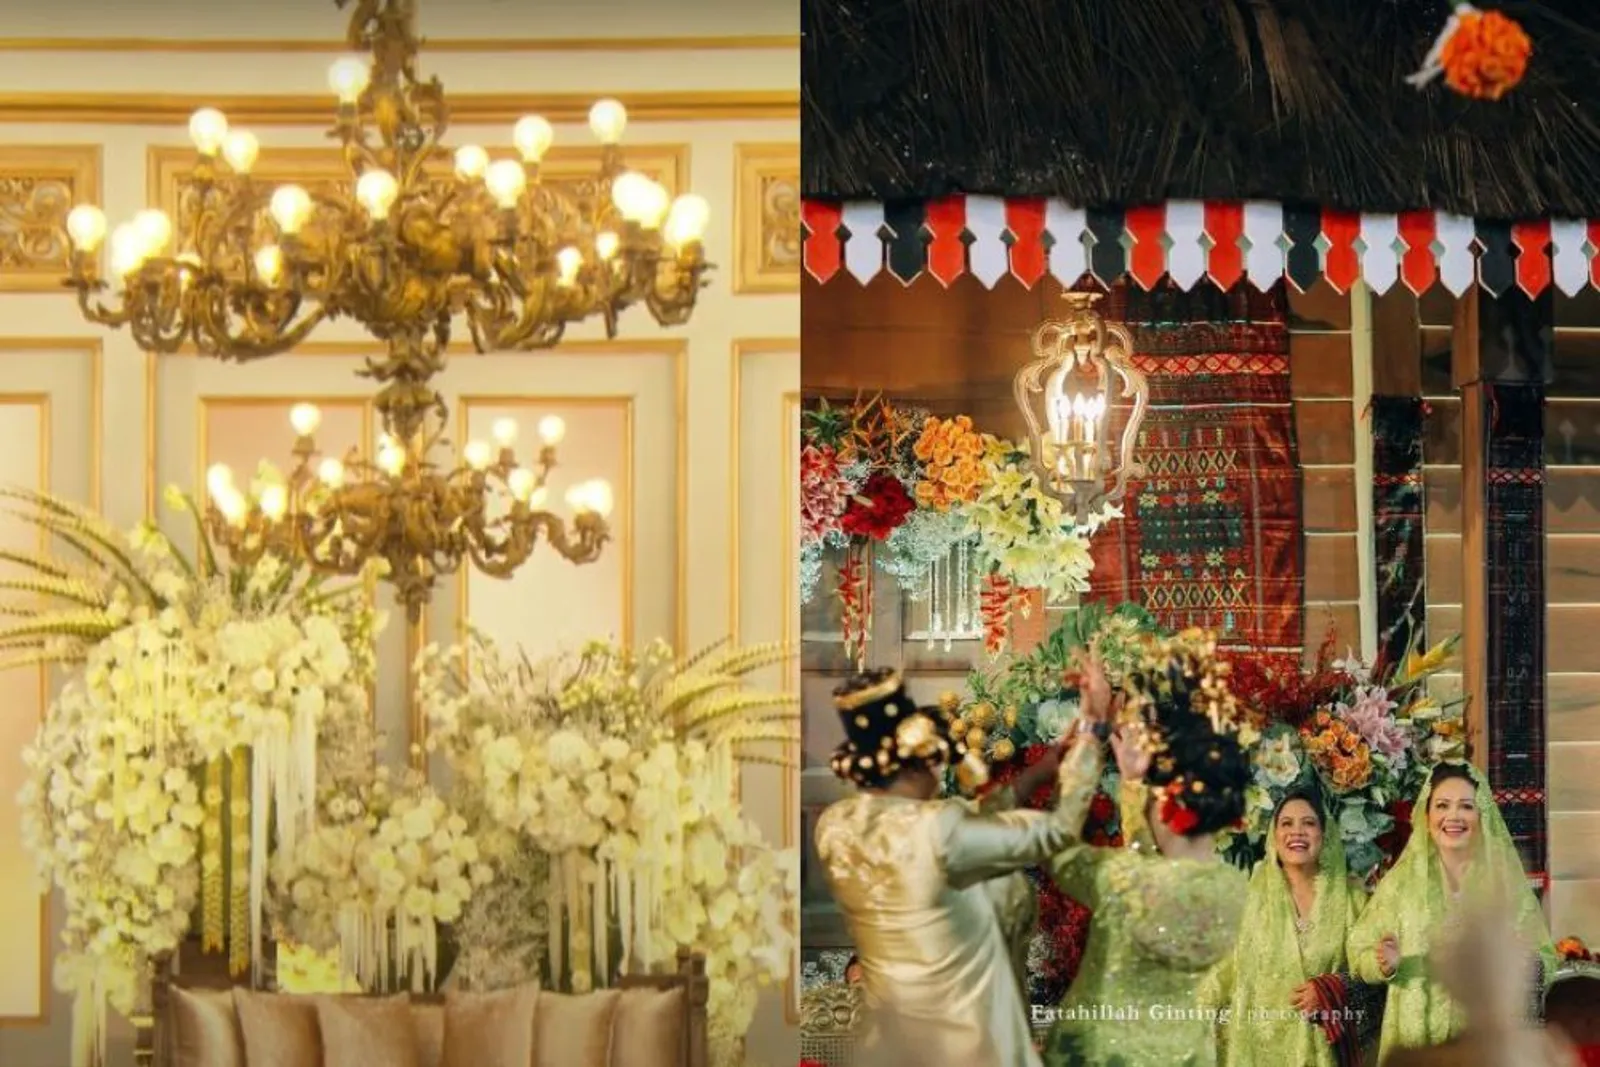 9 Adu Dekorasi Resepsi Pernikahan Kahiyang vs Kaesang, Sama-Sama Megah